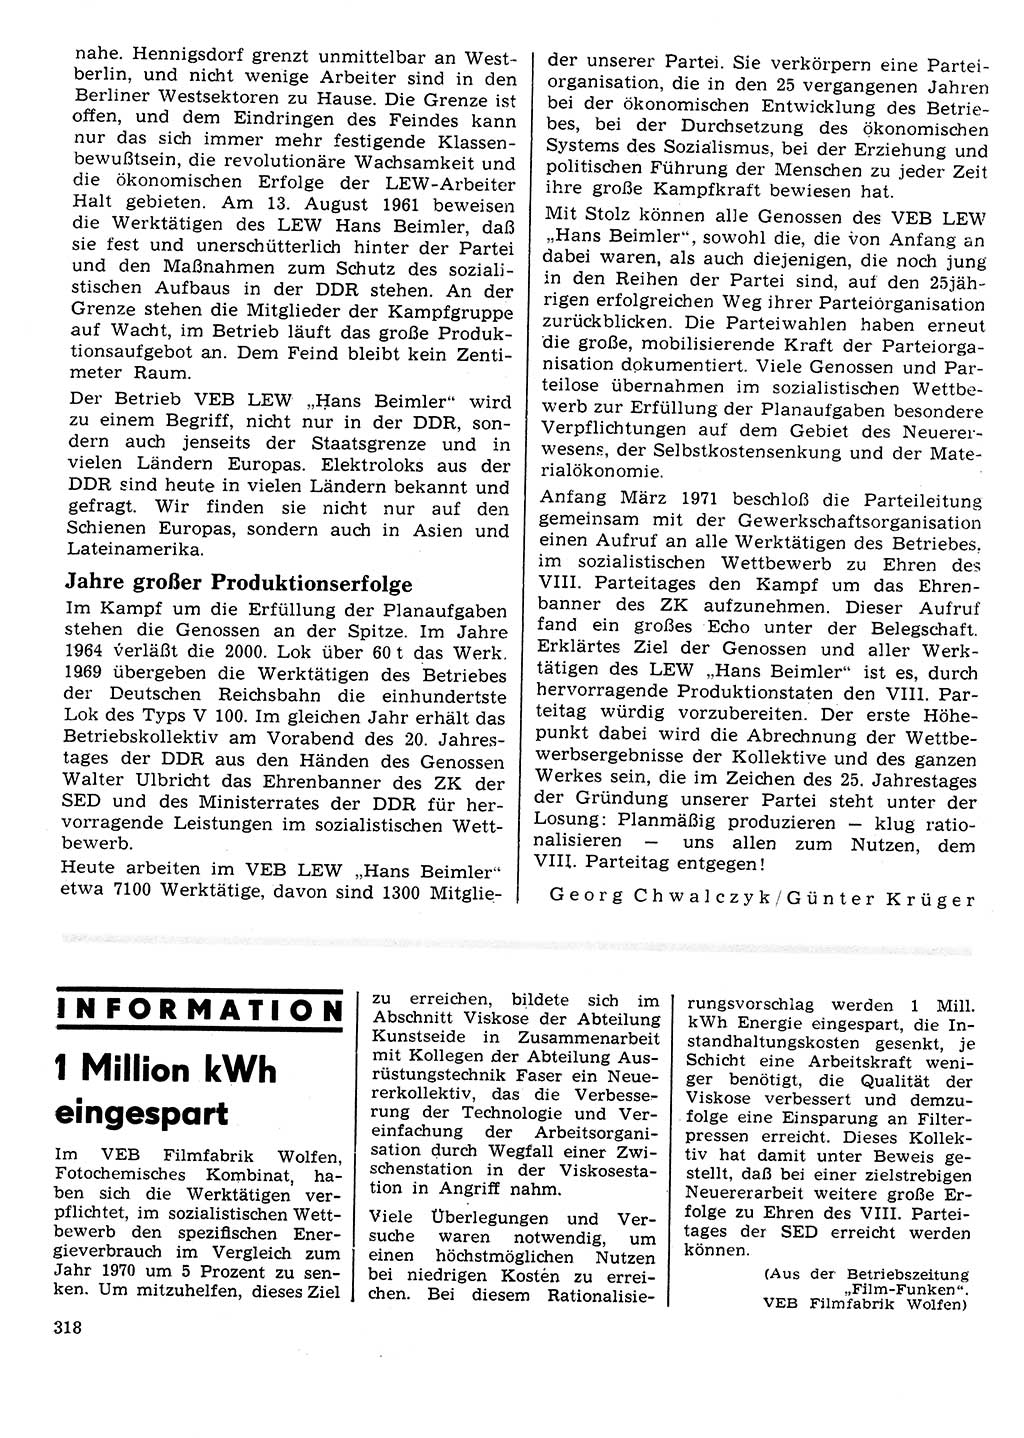 Neuer Weg (NW), Organ des Zentralkomitees (ZK) der SED (Sozialistische Einheitspartei Deutschlands) für Fragen des Parteilebens, 26. Jahrgang [Deutsche Demokratische Republik (DDR)] 1971, Seite 318 (NW ZK SED DDR 1971, S. 318)